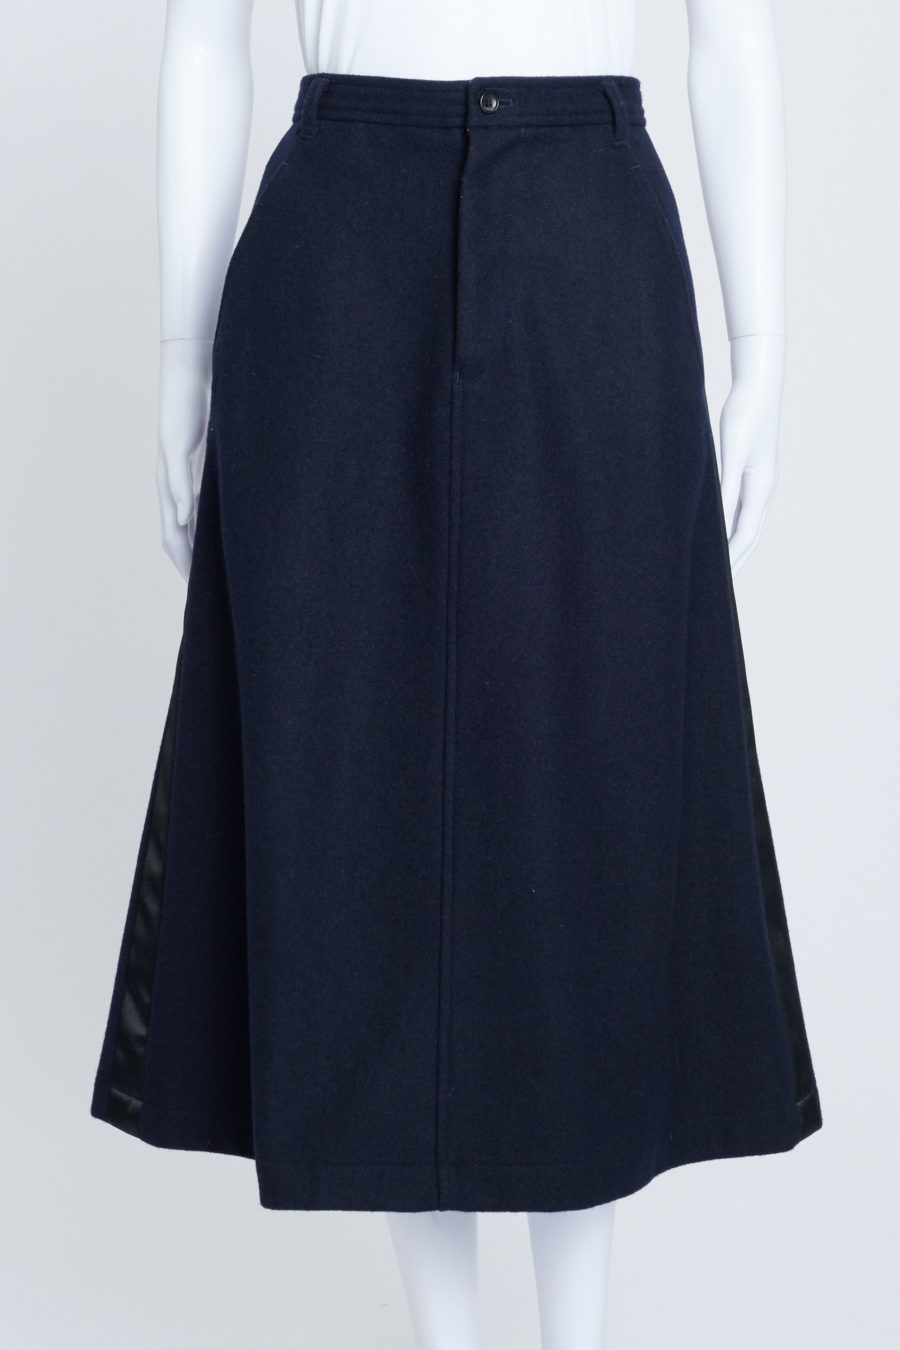 Pre-loved Navy Blue Wool Midi Skirt